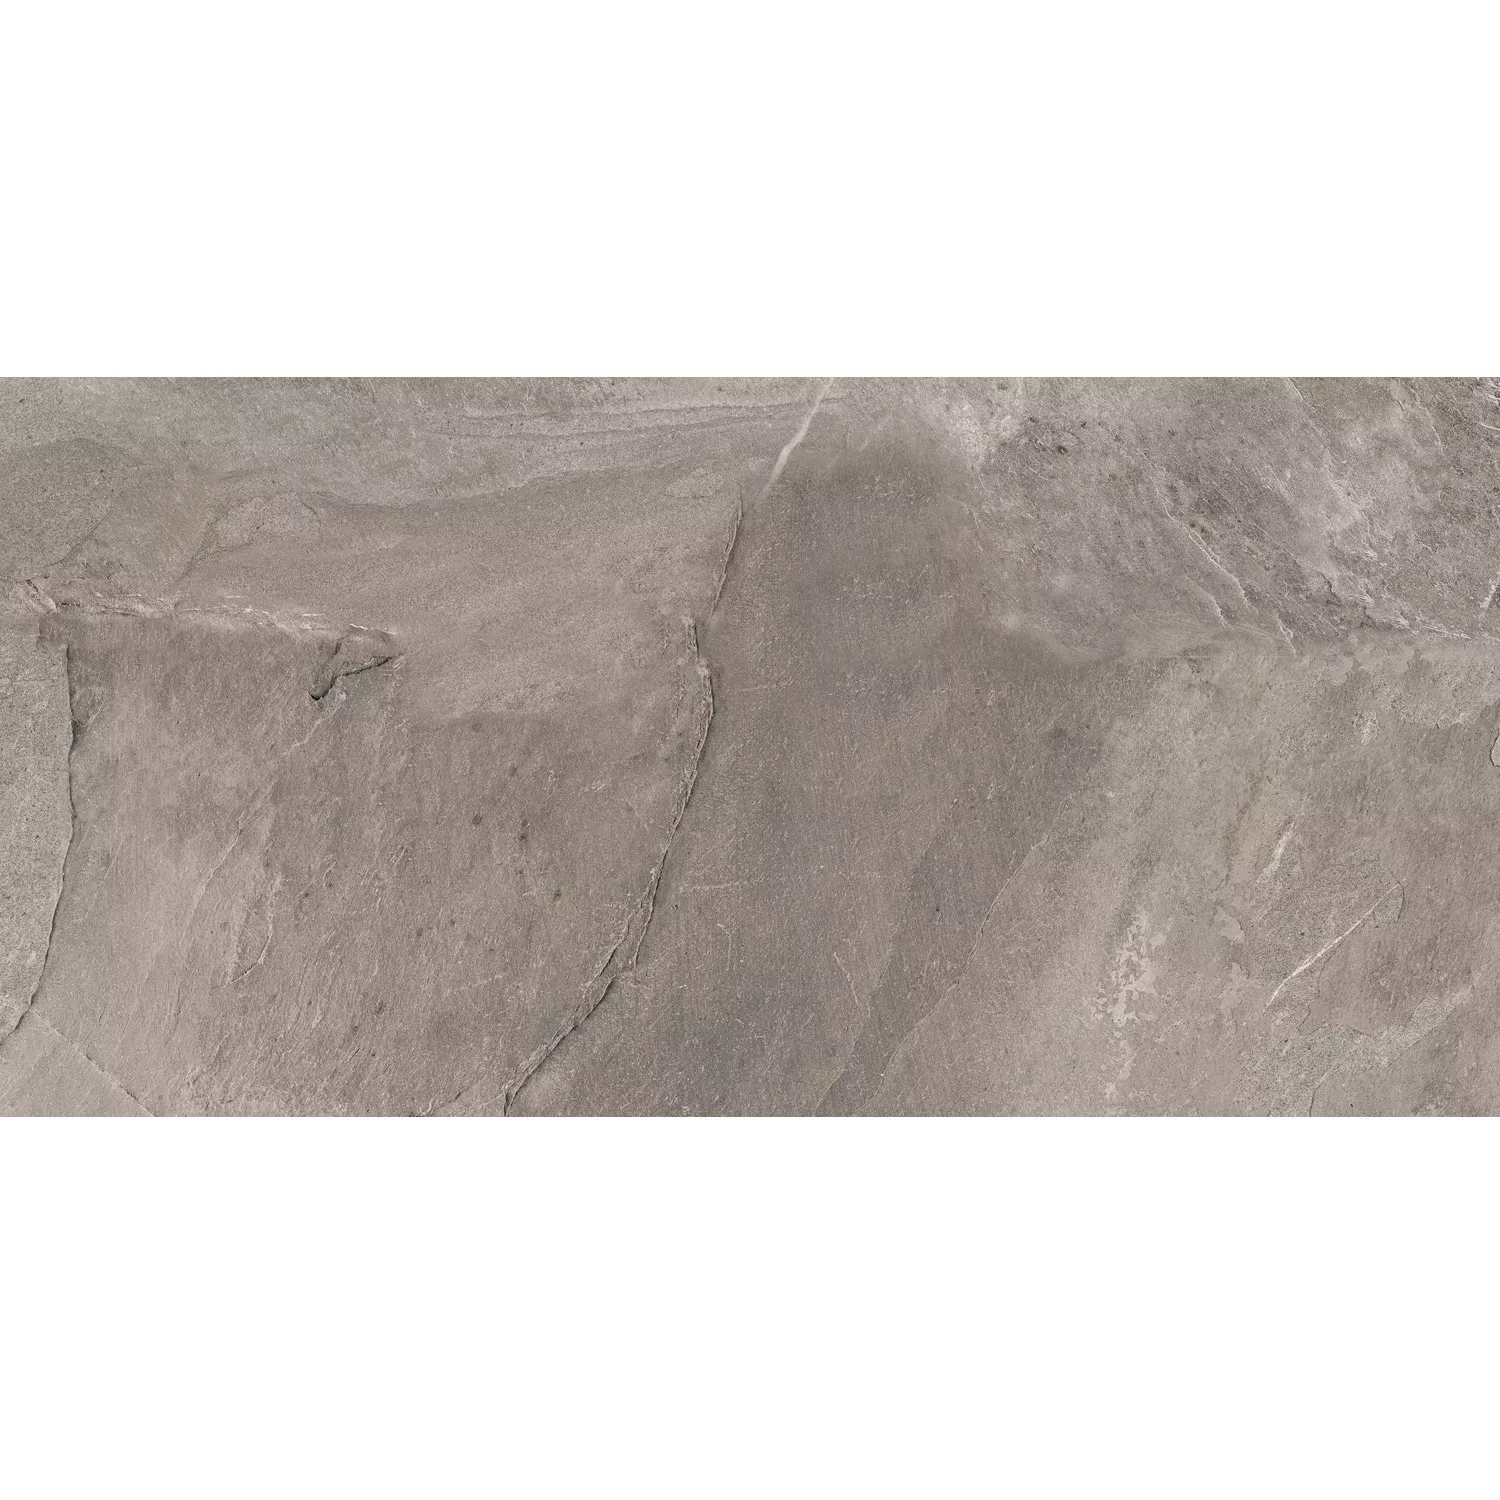 Próbka Płytki Podłogowe Homeland Kamień Naturalny Optyka R10 Szary 30x60cm